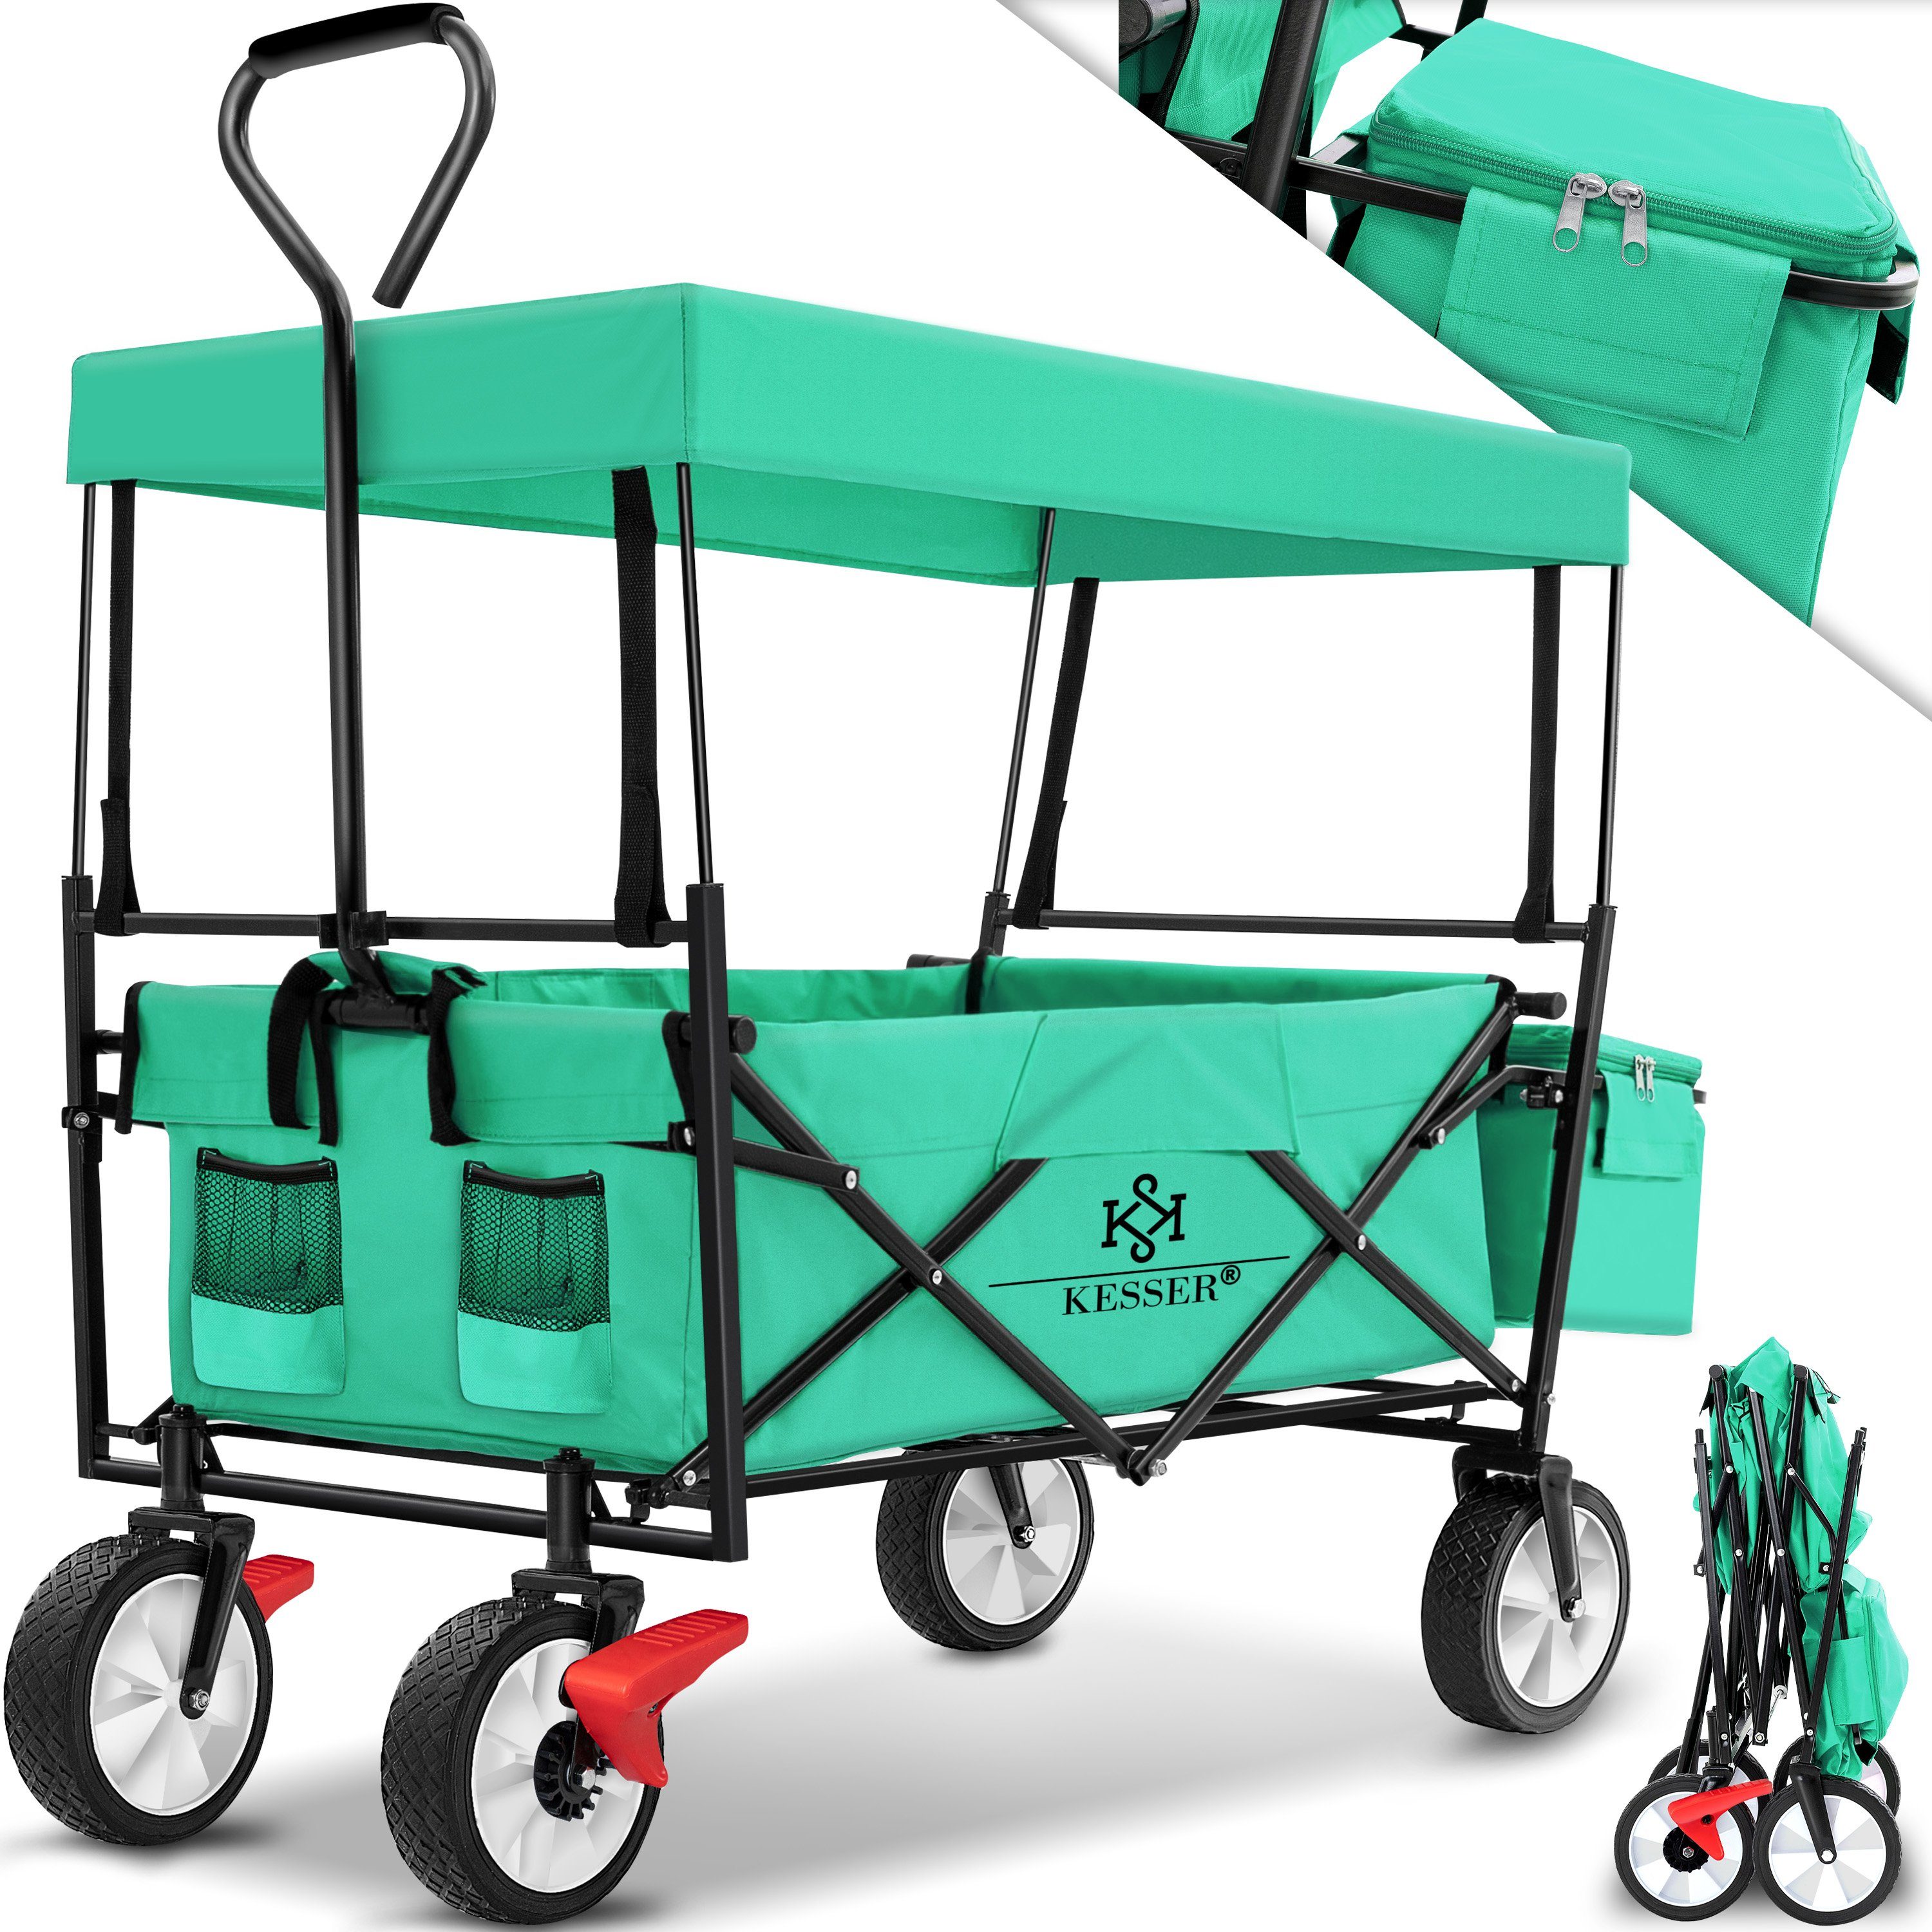 KESSER Bollerwagen, Bollerwagen Grün Handwagen Mint Dach Geräte Transportkarre mit faltbar